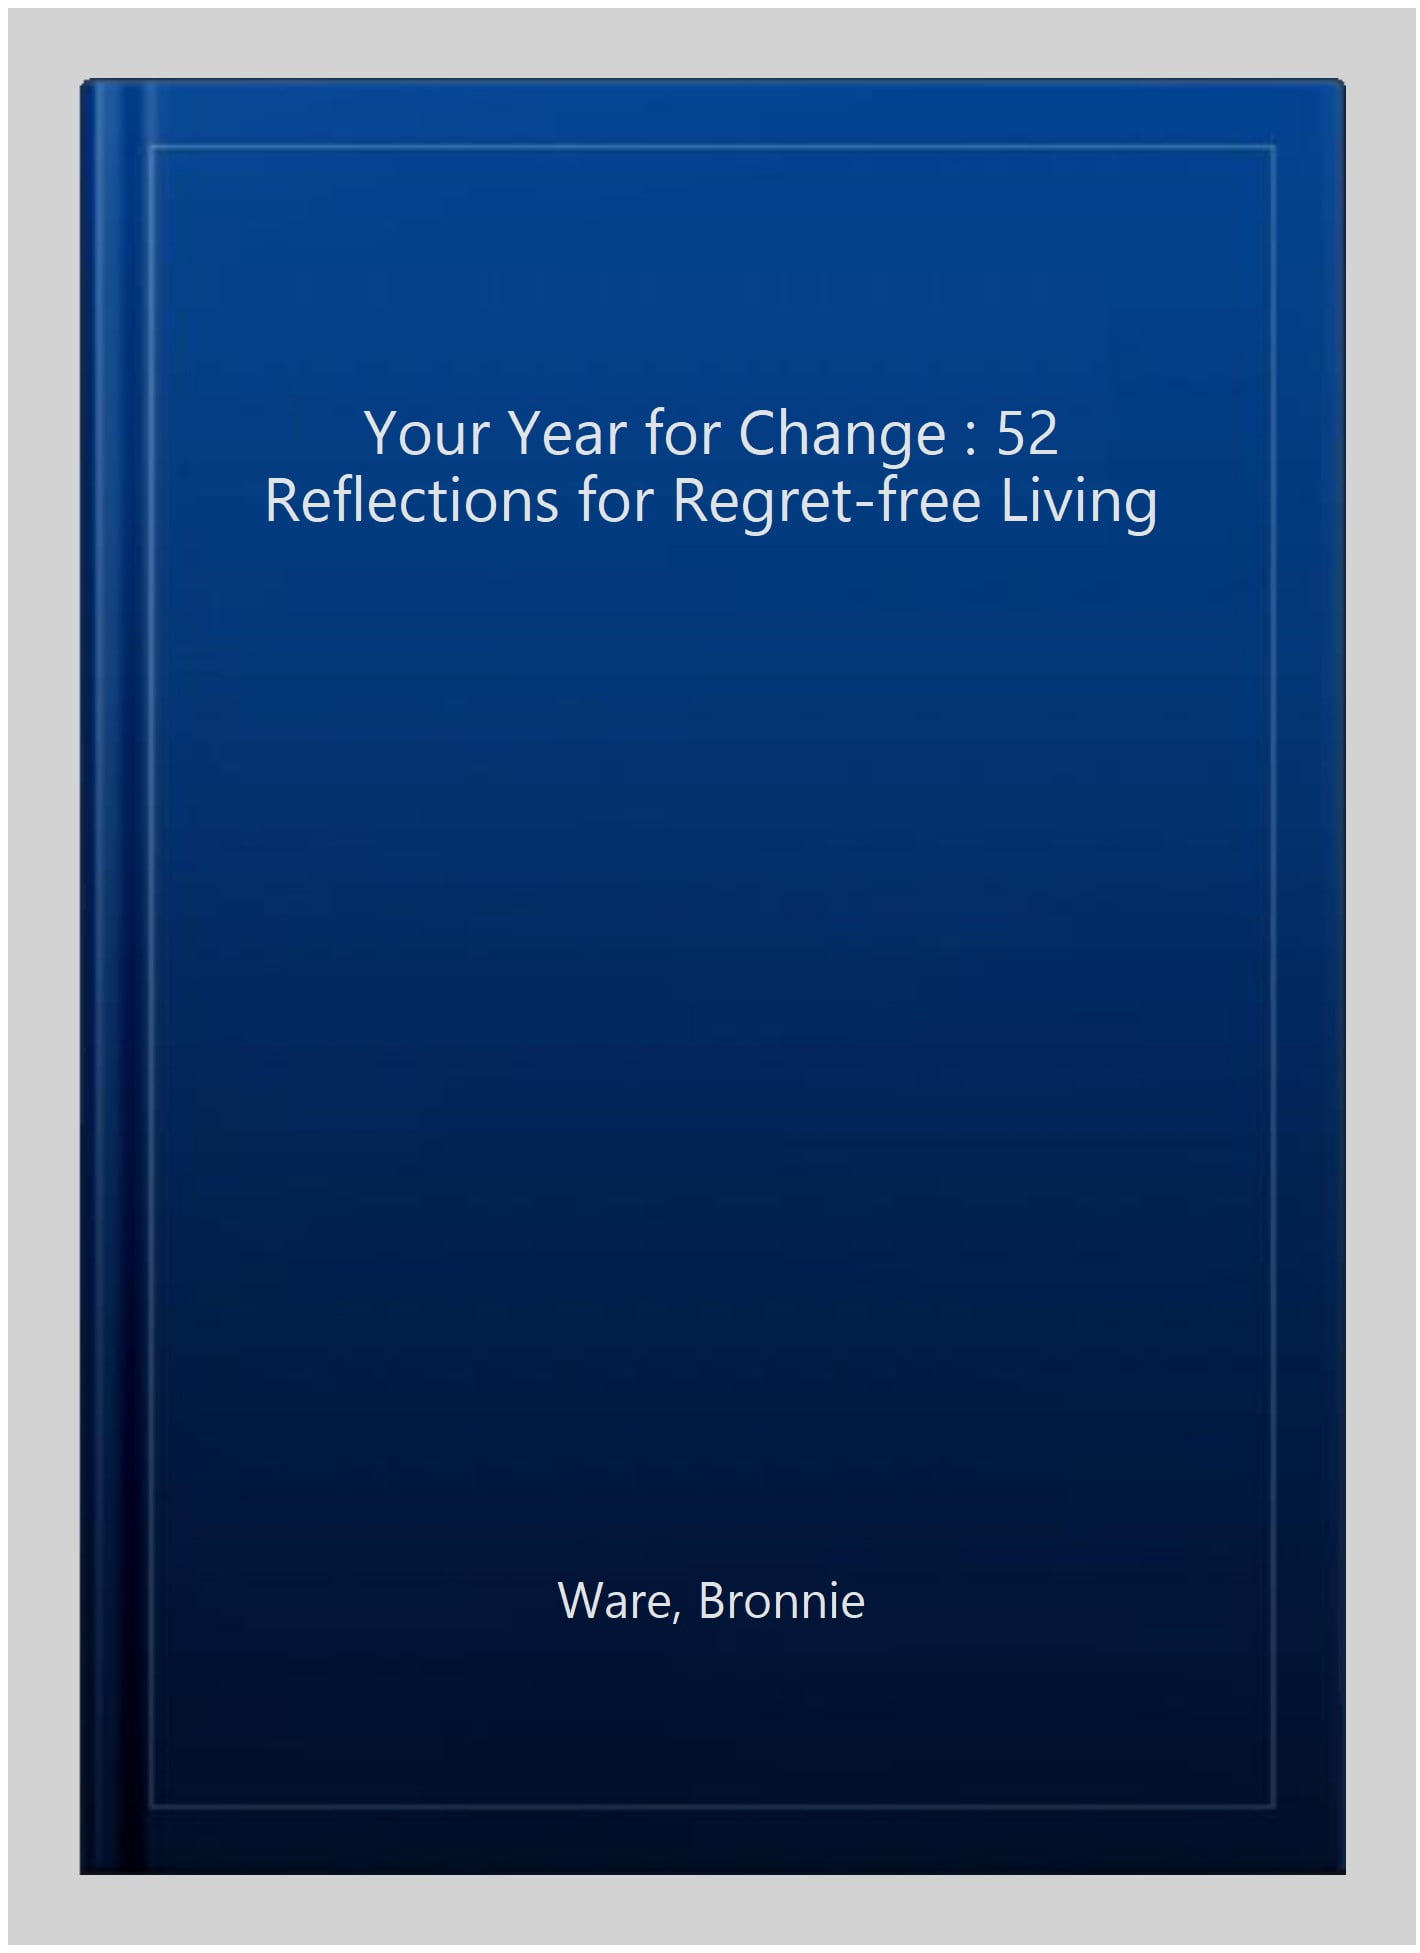 Your Year for Change von Bronnie Ware, ISBN 978-1-78180-386-8